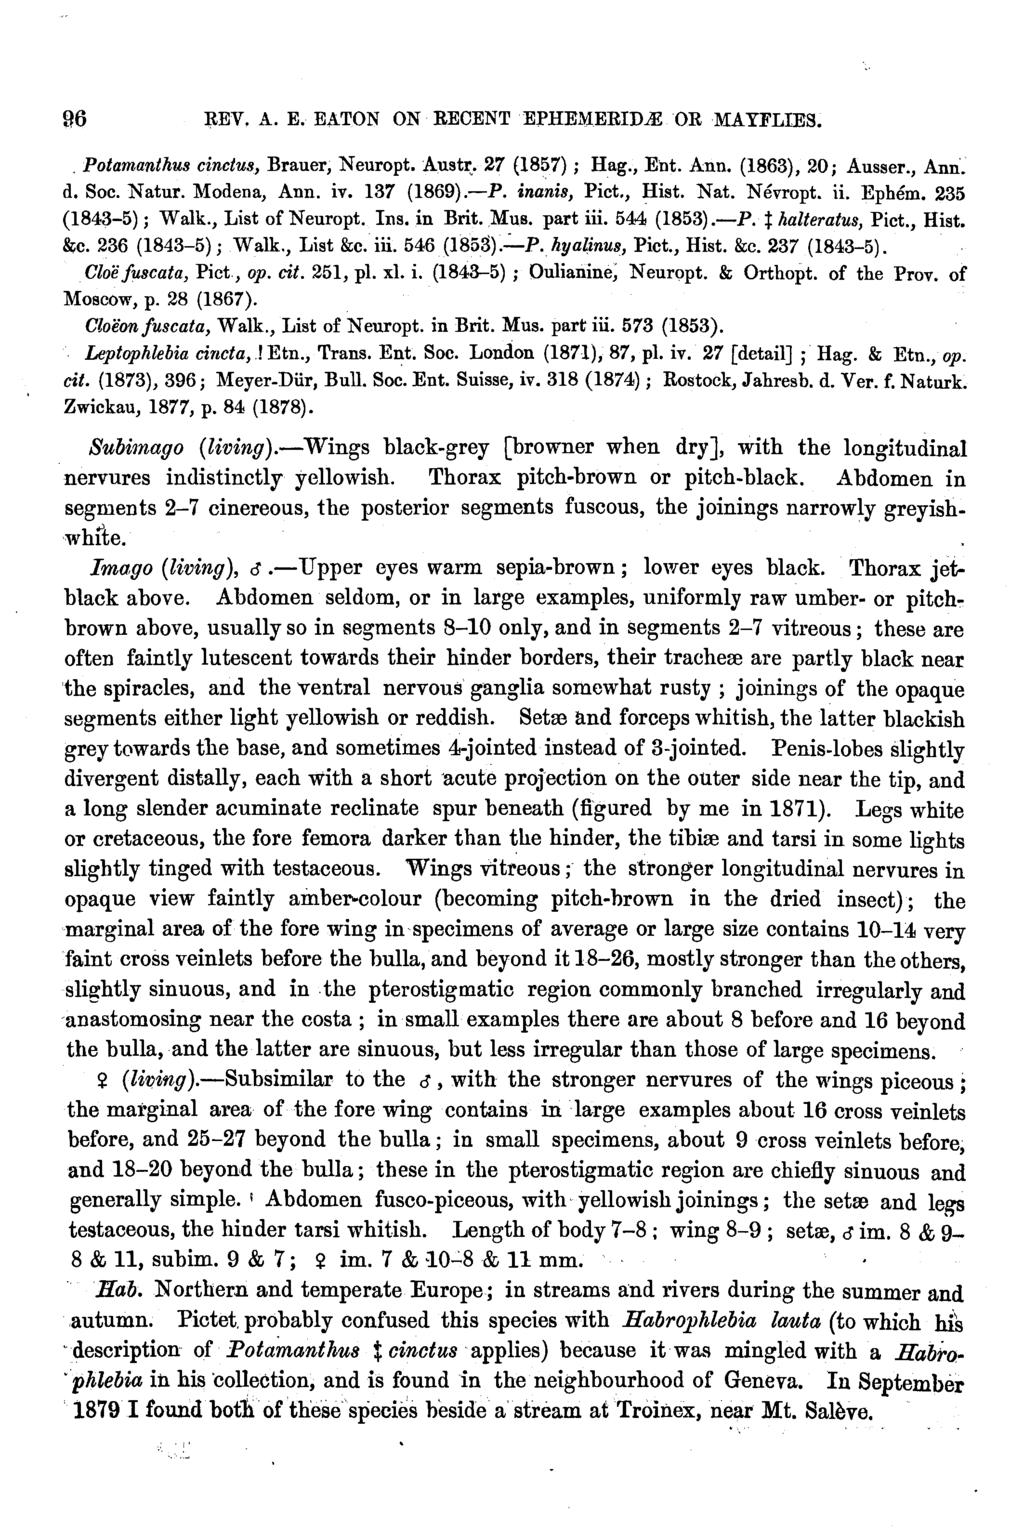 96 l,tev, A. E. EATON ON RECENT EPHEMERID OR MAYFLIES., Potamanthus cinctus, Brauer, Neuropt. Aust~. 27 (1857); Hag., E'nt. Ann. (1863), 20; Ausser., Ann'. d. Soc. Natur. Modena, Ann. iv. 137 (1869).